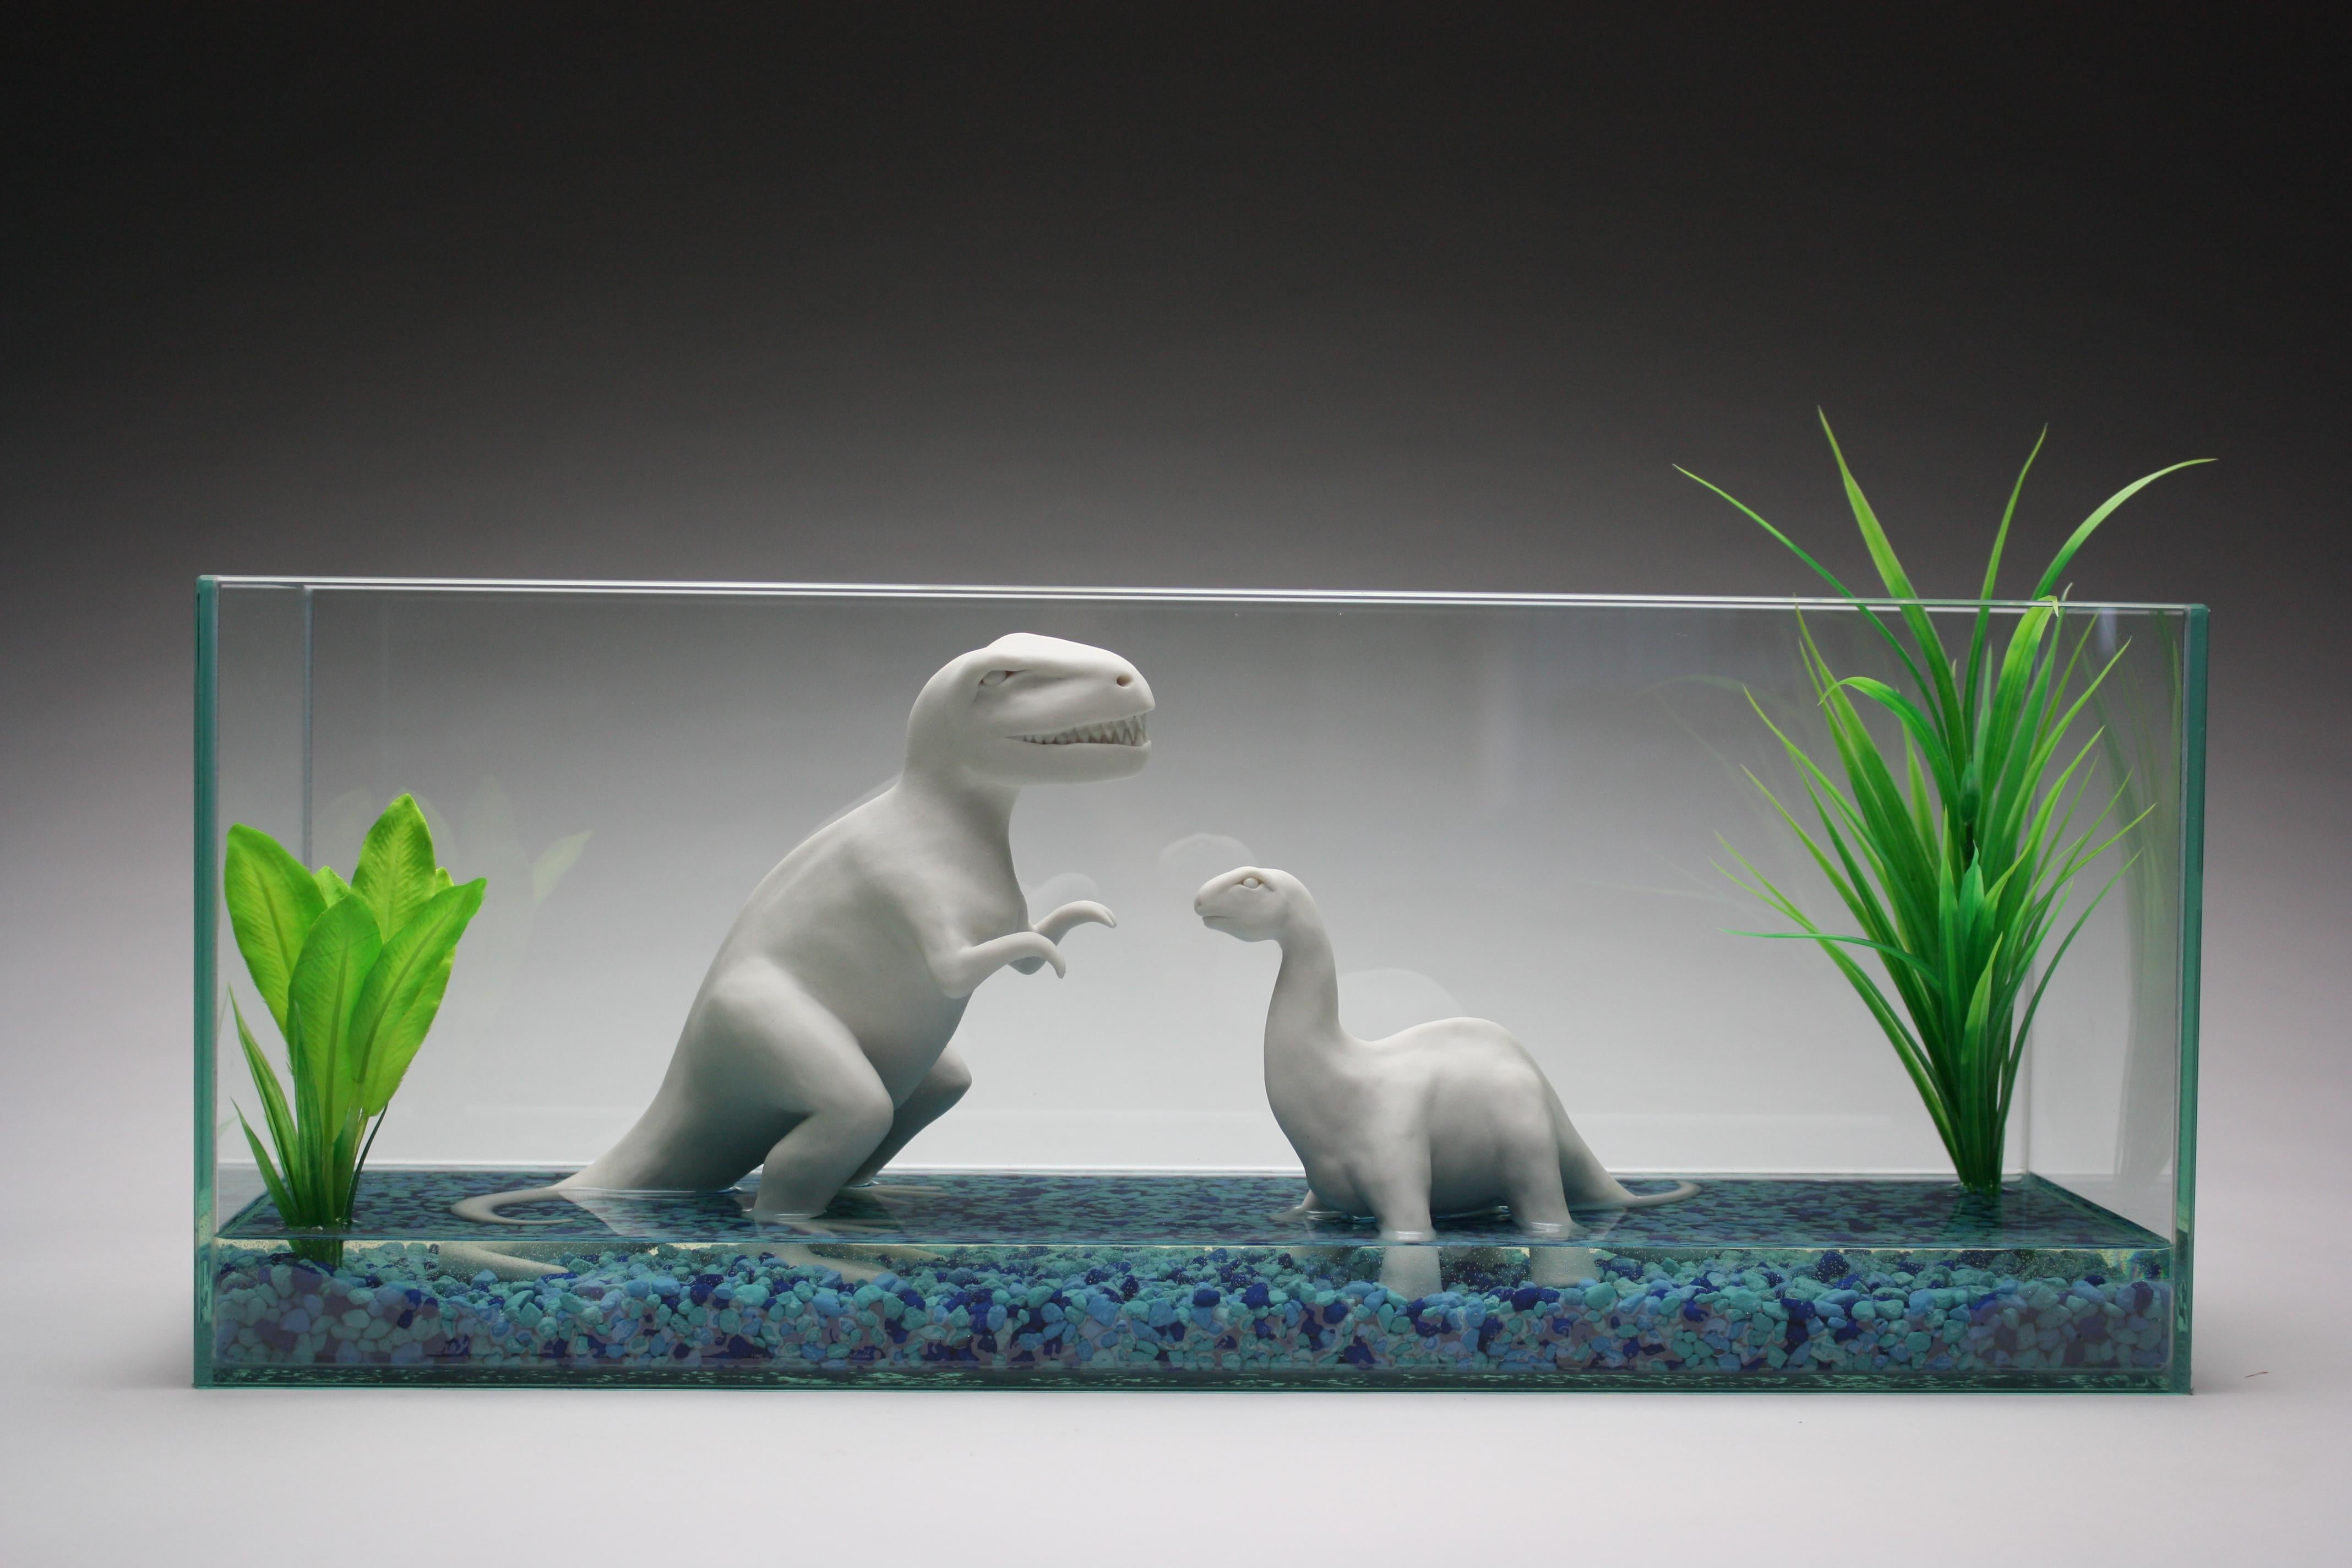 Une paire de dinosaures en porcelaine blanche fabriqués à la main par l'artiste new-yorkaise Bethany Krull sont contenus dans un aquarium en verre.  Les dinosaures, les plantes artificielles d'un vert éclatant et les pierres d'aquarium bleues sont